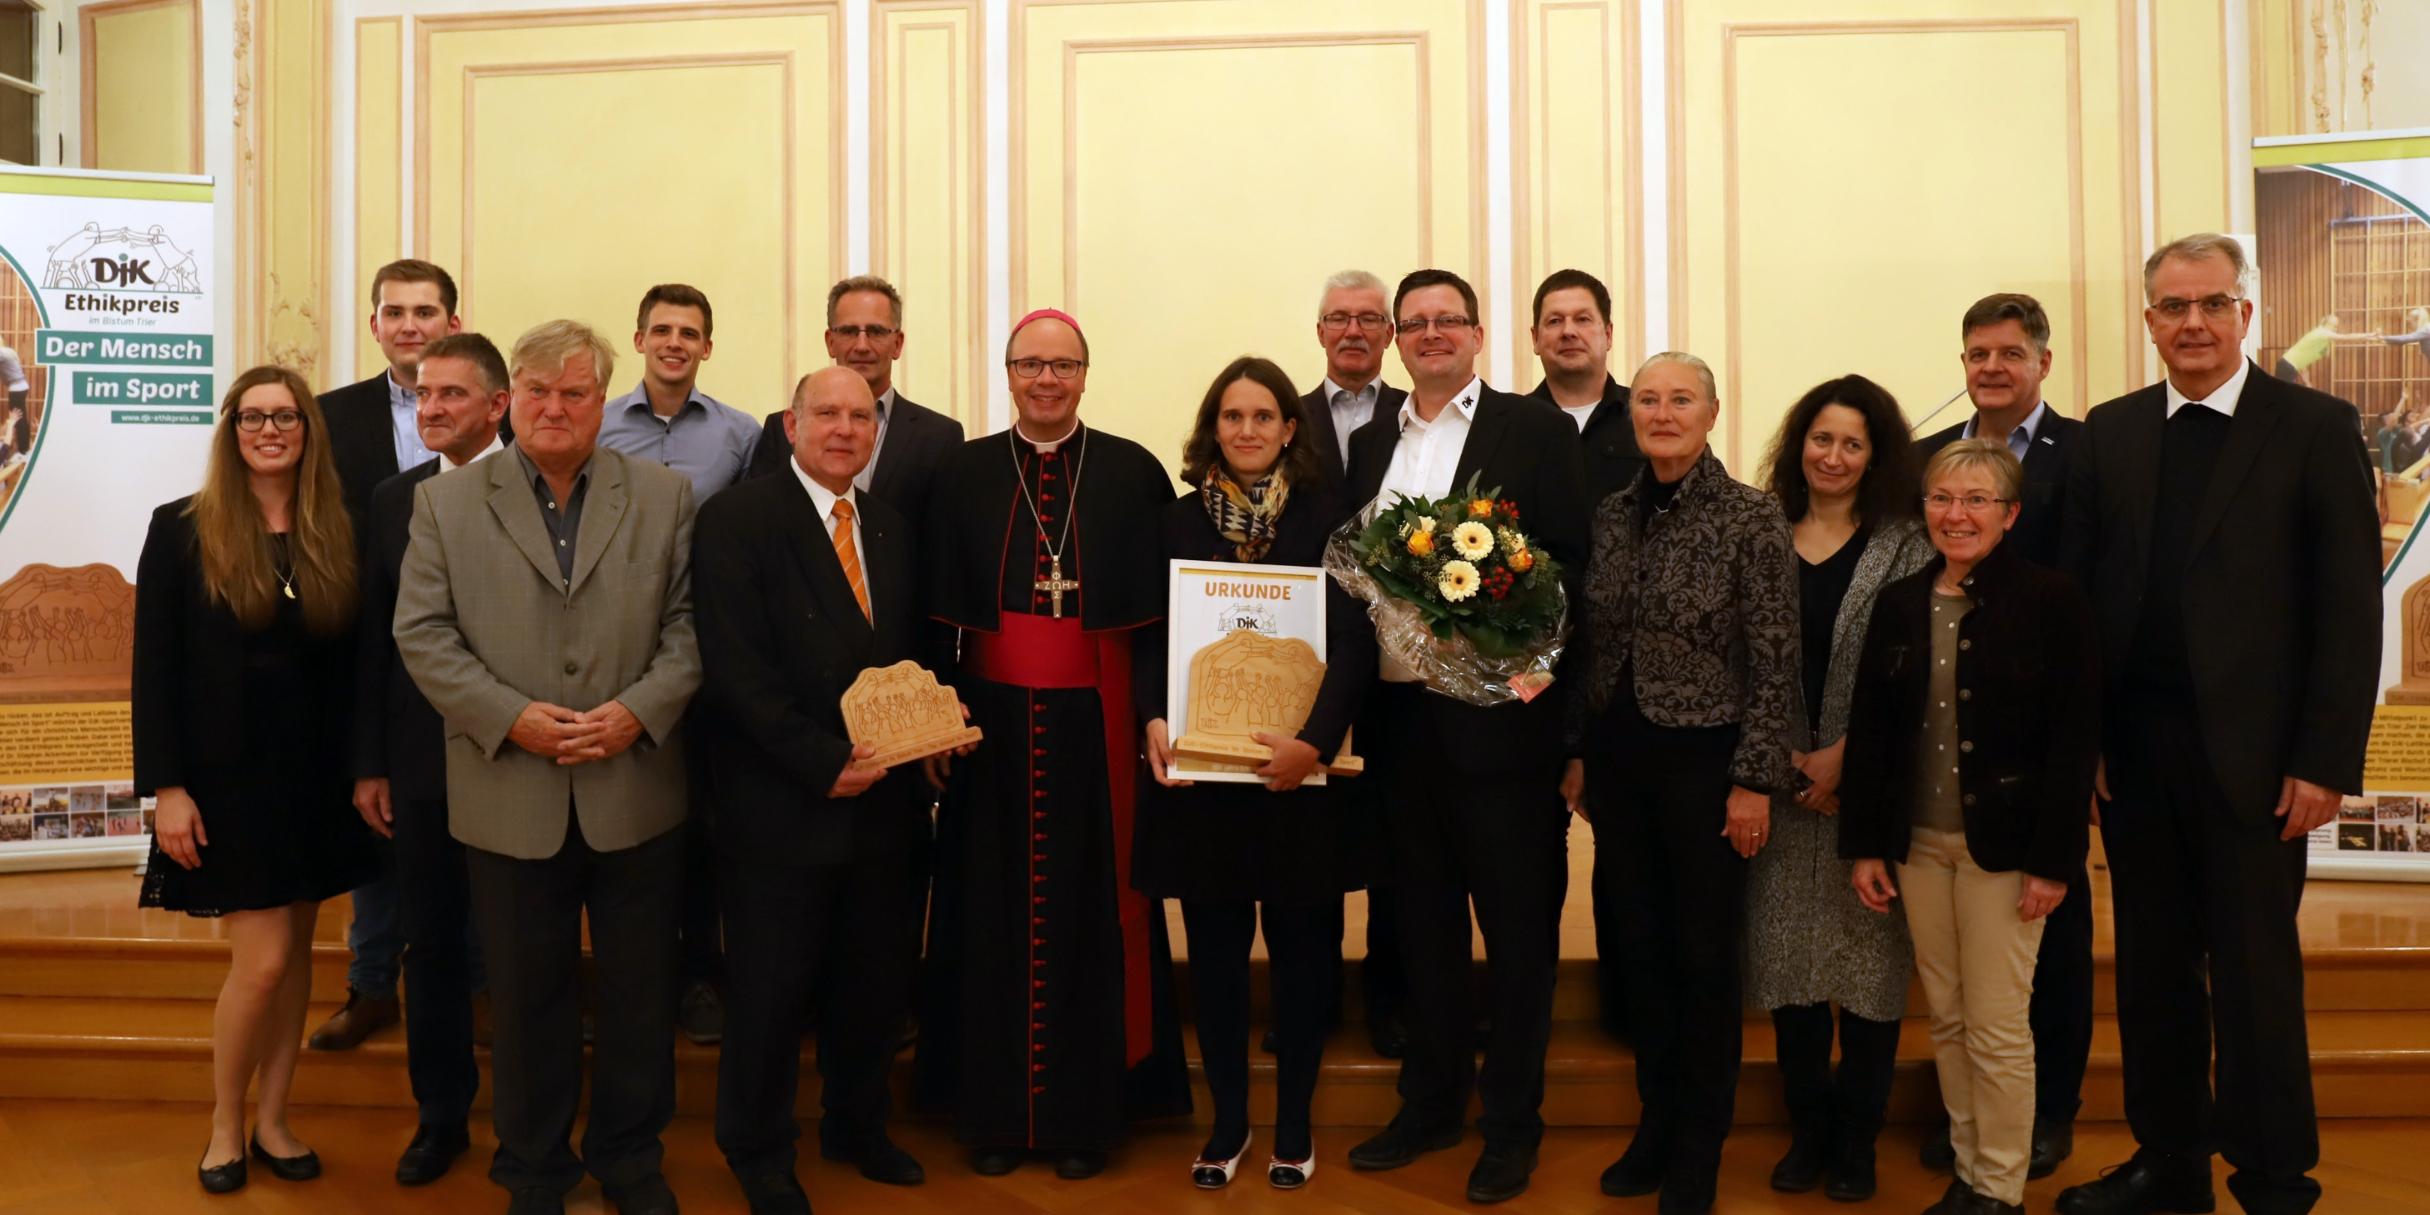 In der Mitte Myriam Backes aus Saarbrücken, Jakob Renn (links neben Bischof Ackermann), Geehrten, den Jurymitgliedern und Weihbischof Peters (rechts)